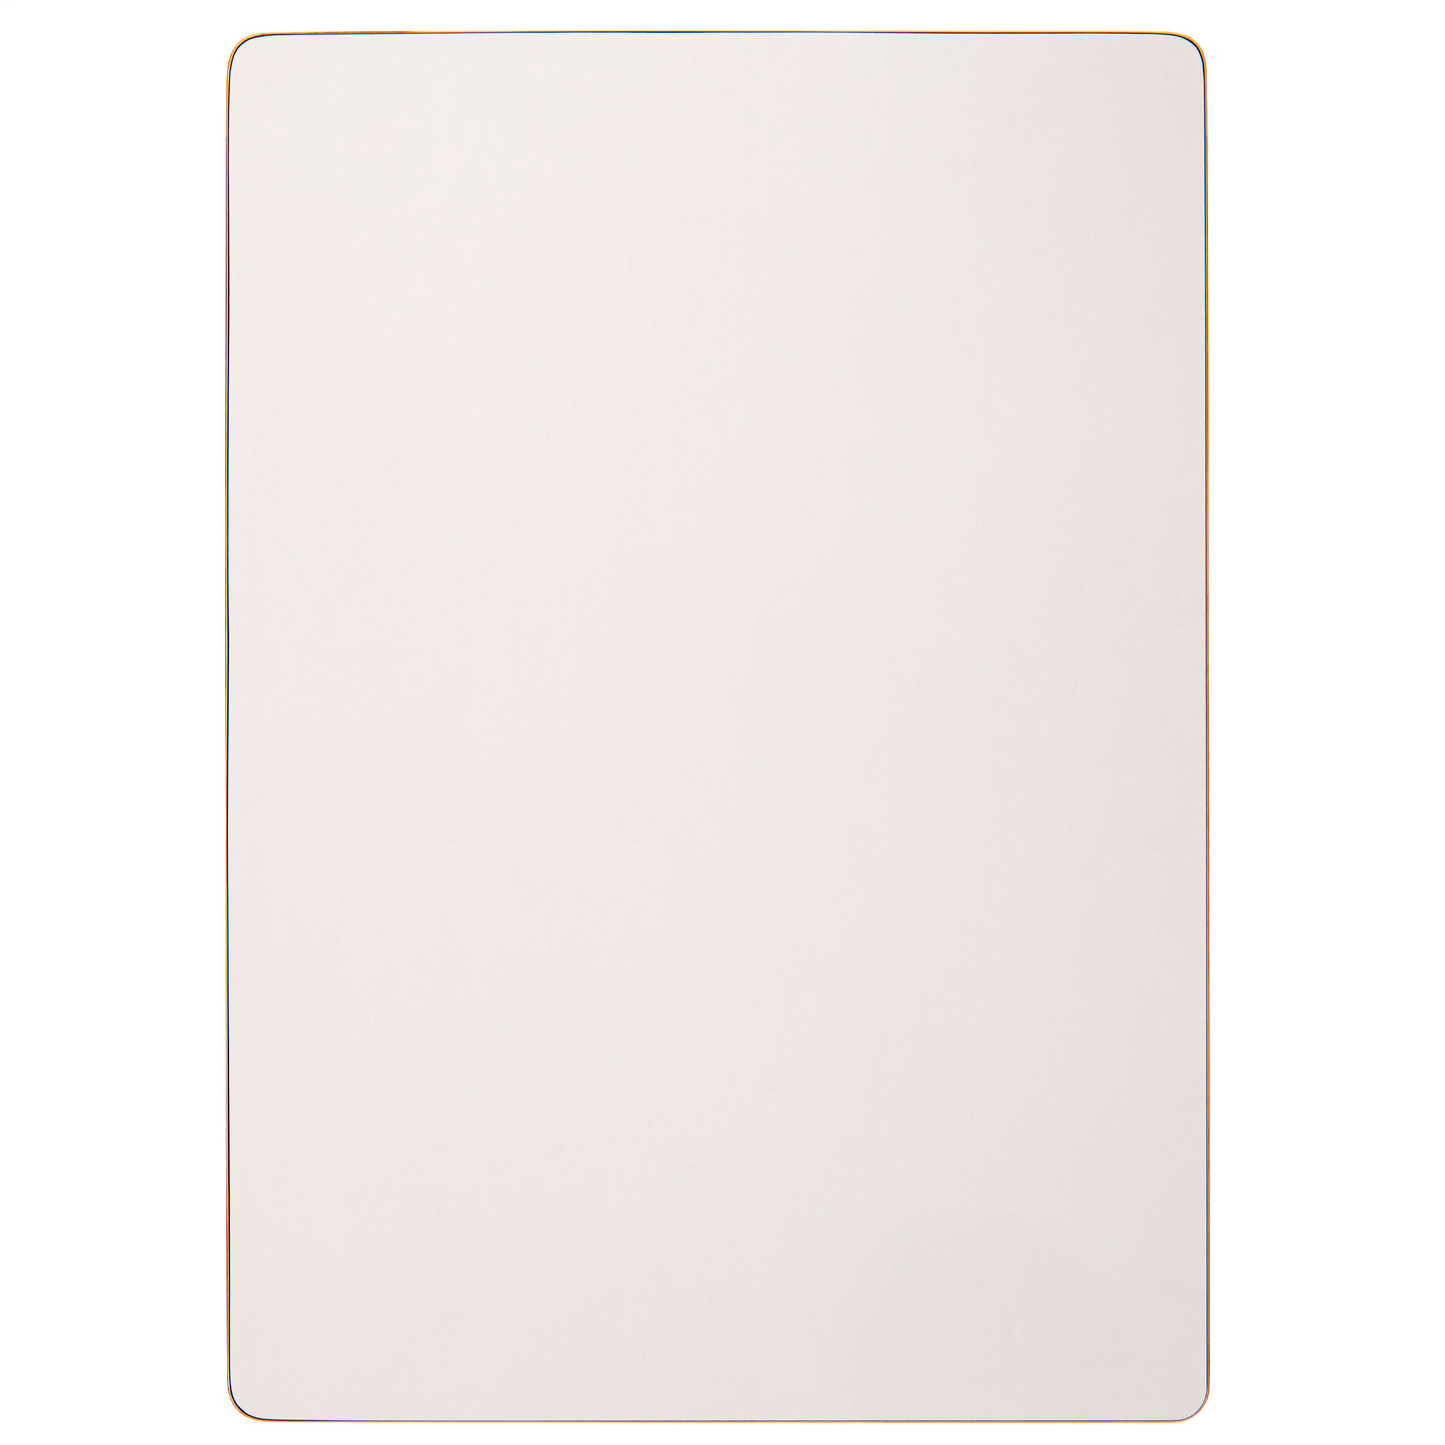 Plateau de table rectangulaire : couleur blanc - Nienhuis AMI